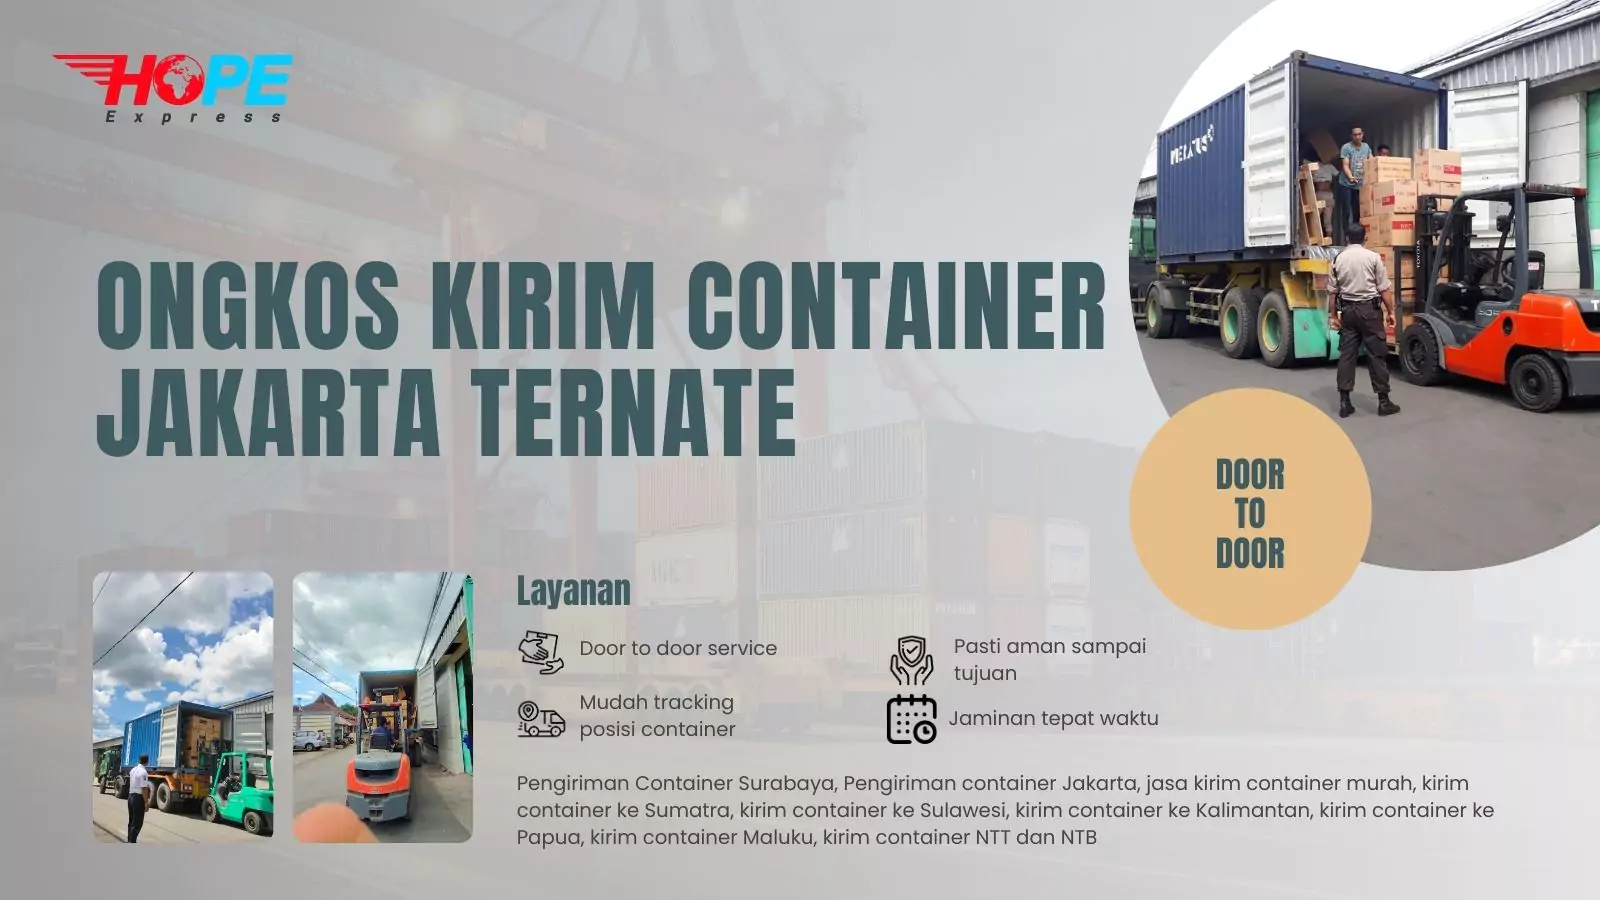 Ongkos Kirim Container Jakarta Ternate